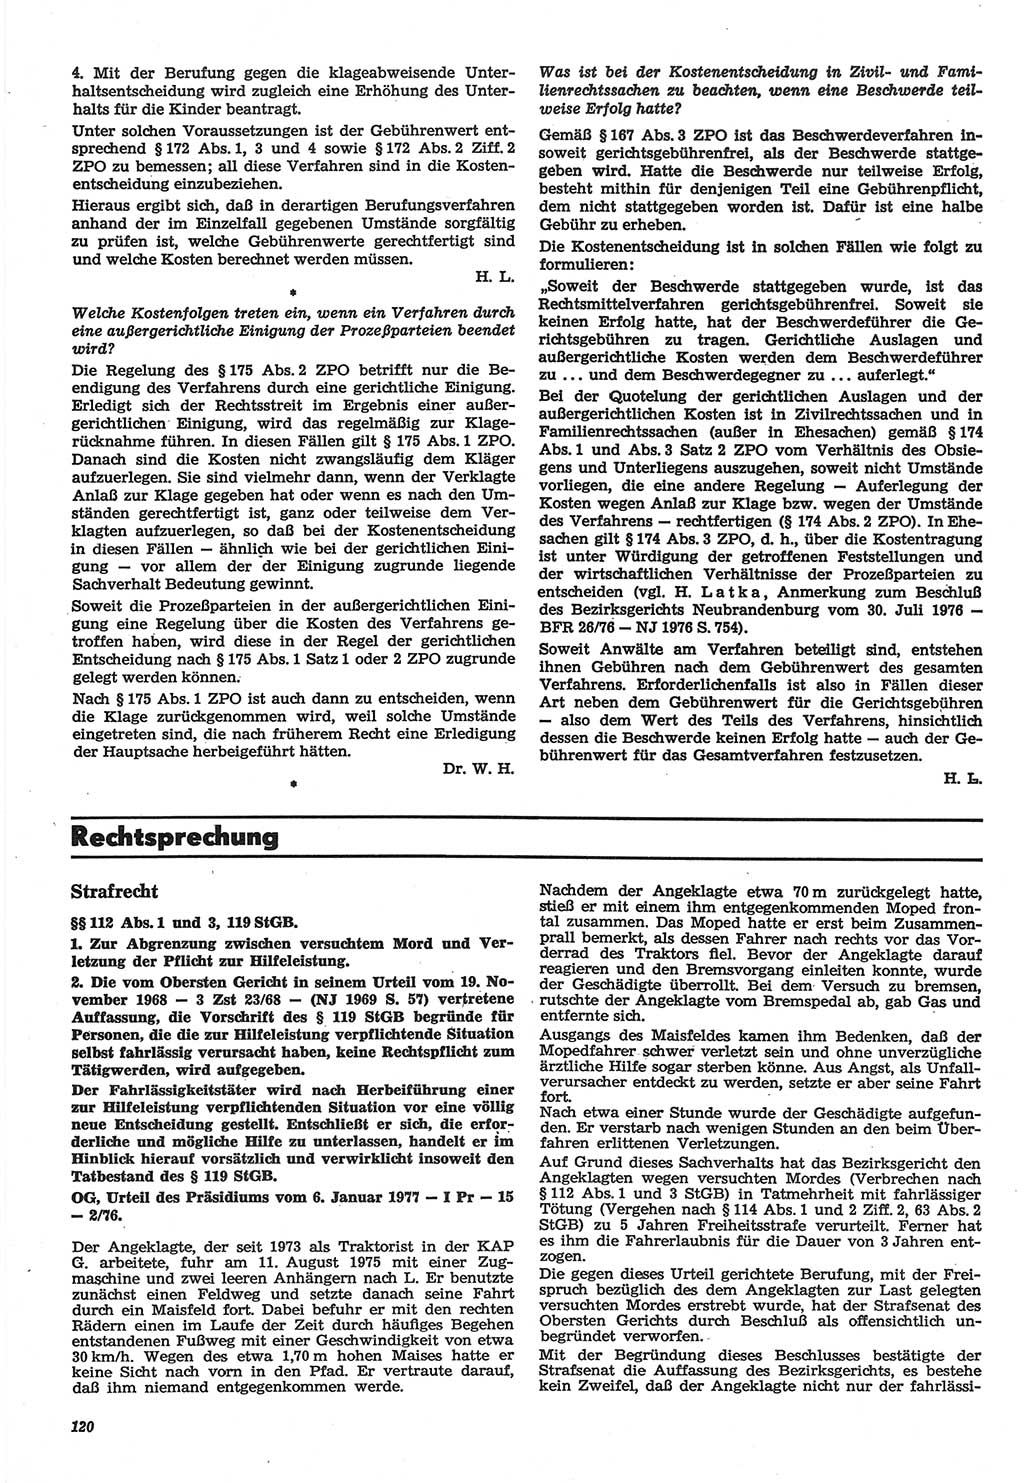 Neue Justiz (NJ), Zeitschrift für Recht und Rechtswissenschaft-Zeitschrift, sozialistisches Recht und Gesetzlichkeit, 31. Jahrgang 1977, Seite 120 (NJ DDR 1977, S. 120)